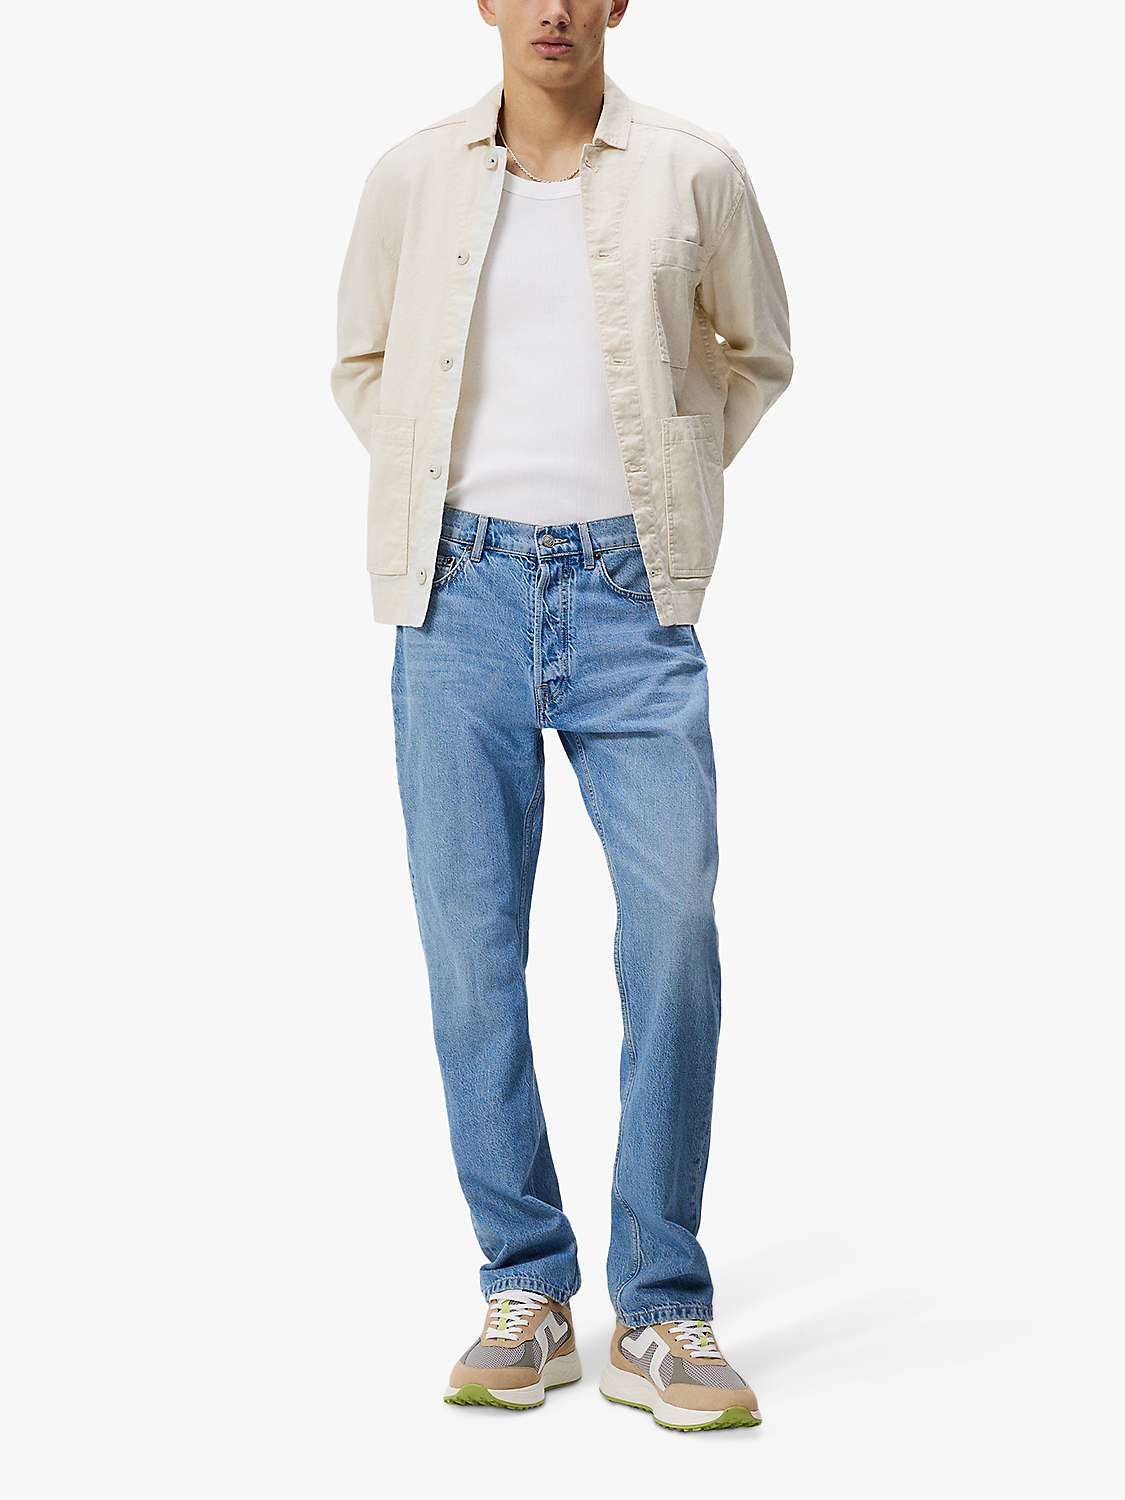 Buy J.Lindeberg Cody Washed Regular Jeans, Light Blue Online at johnlewis.com